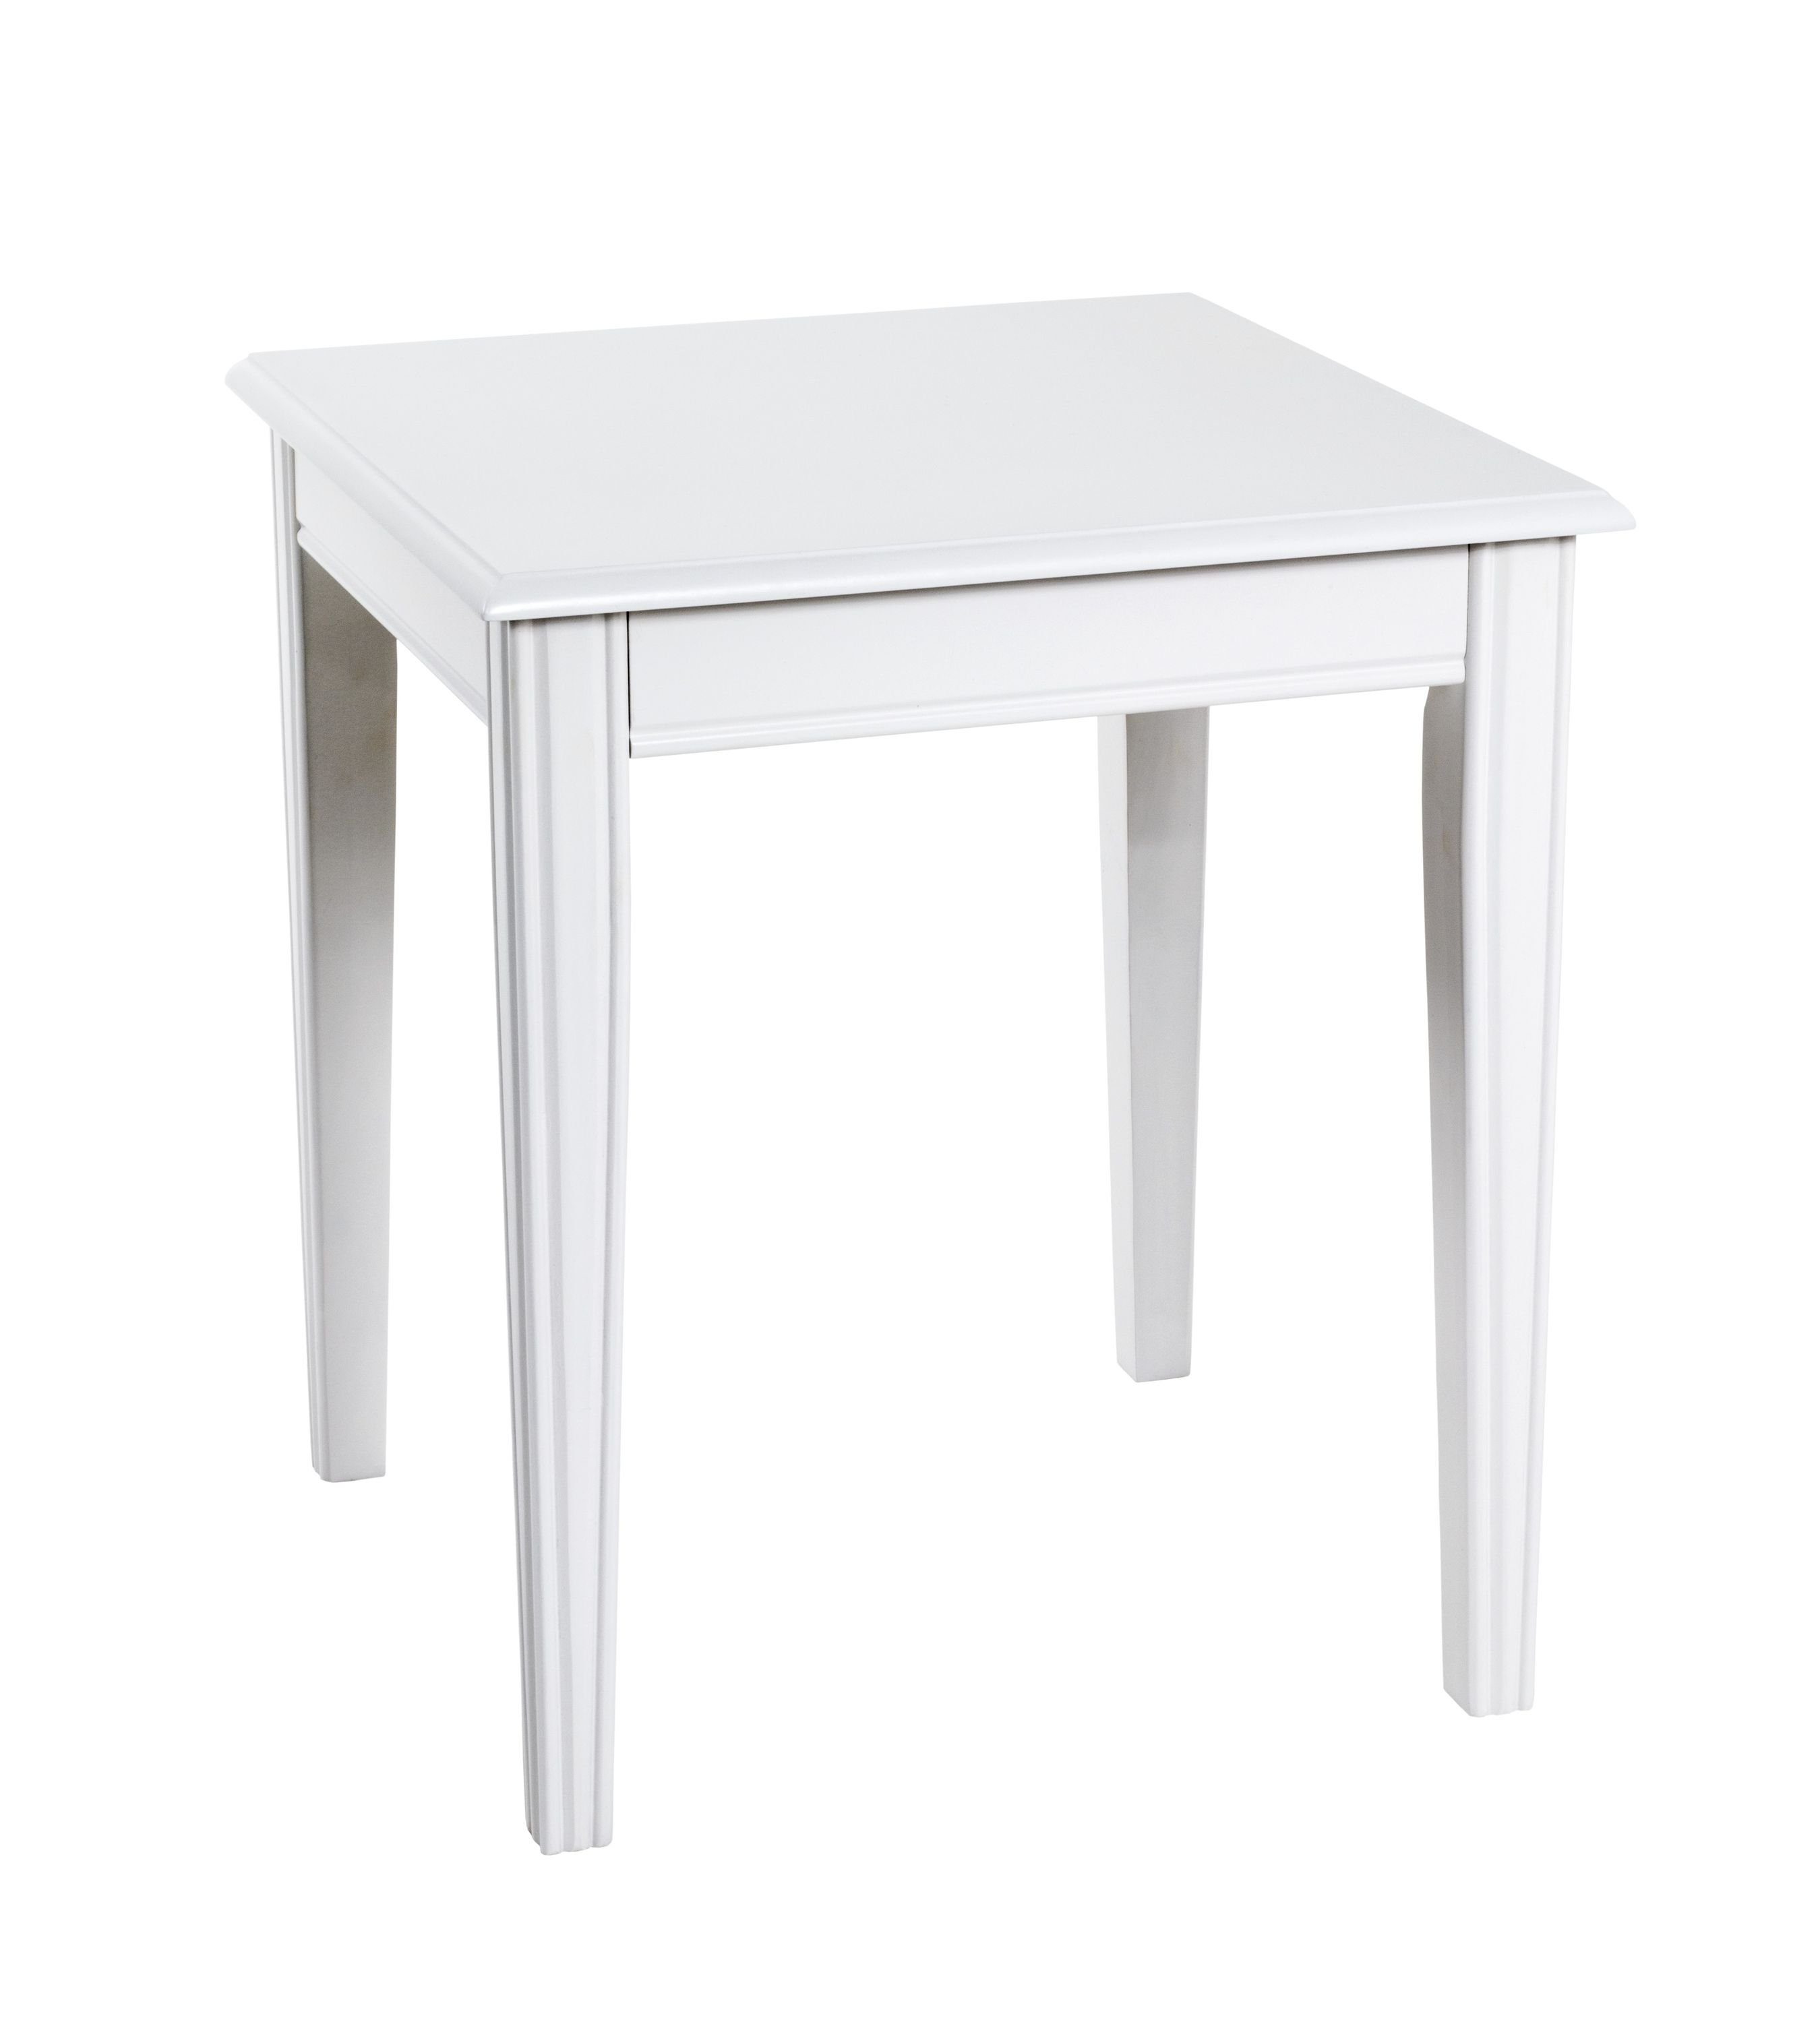 HAKU Beistelltisch 45x51x45 Beistelltisch BHT weiß Möbel cm) cm (BHT weiß Beistelltisch, HAKU 45x51x45